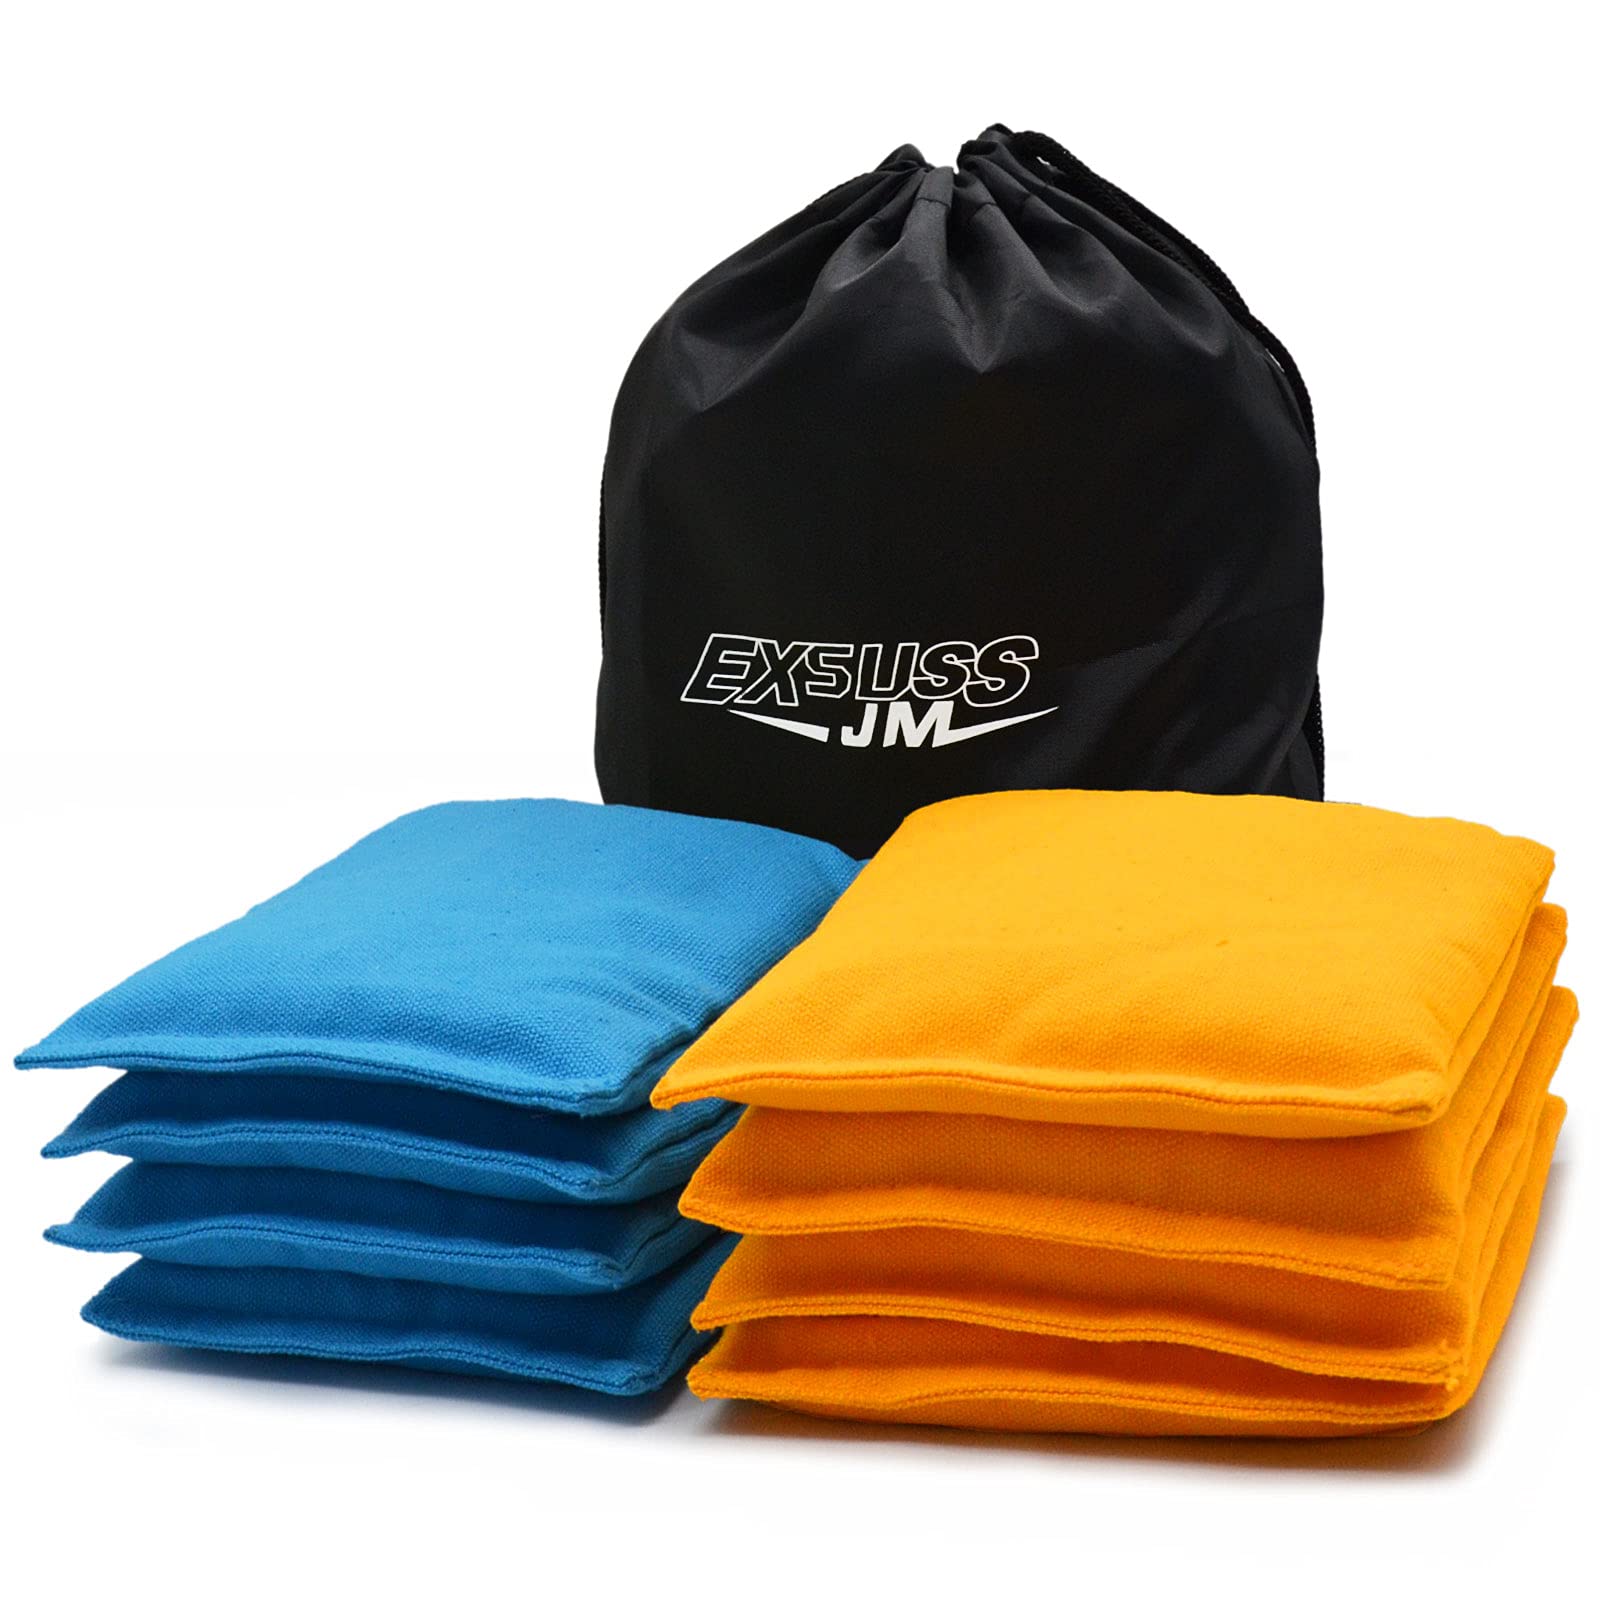 JMEXSUSS Regulation Size 16 Oz. Cornhole Bags 29 Colors Available, Premium  All-Weather Resistant Duck Cloth